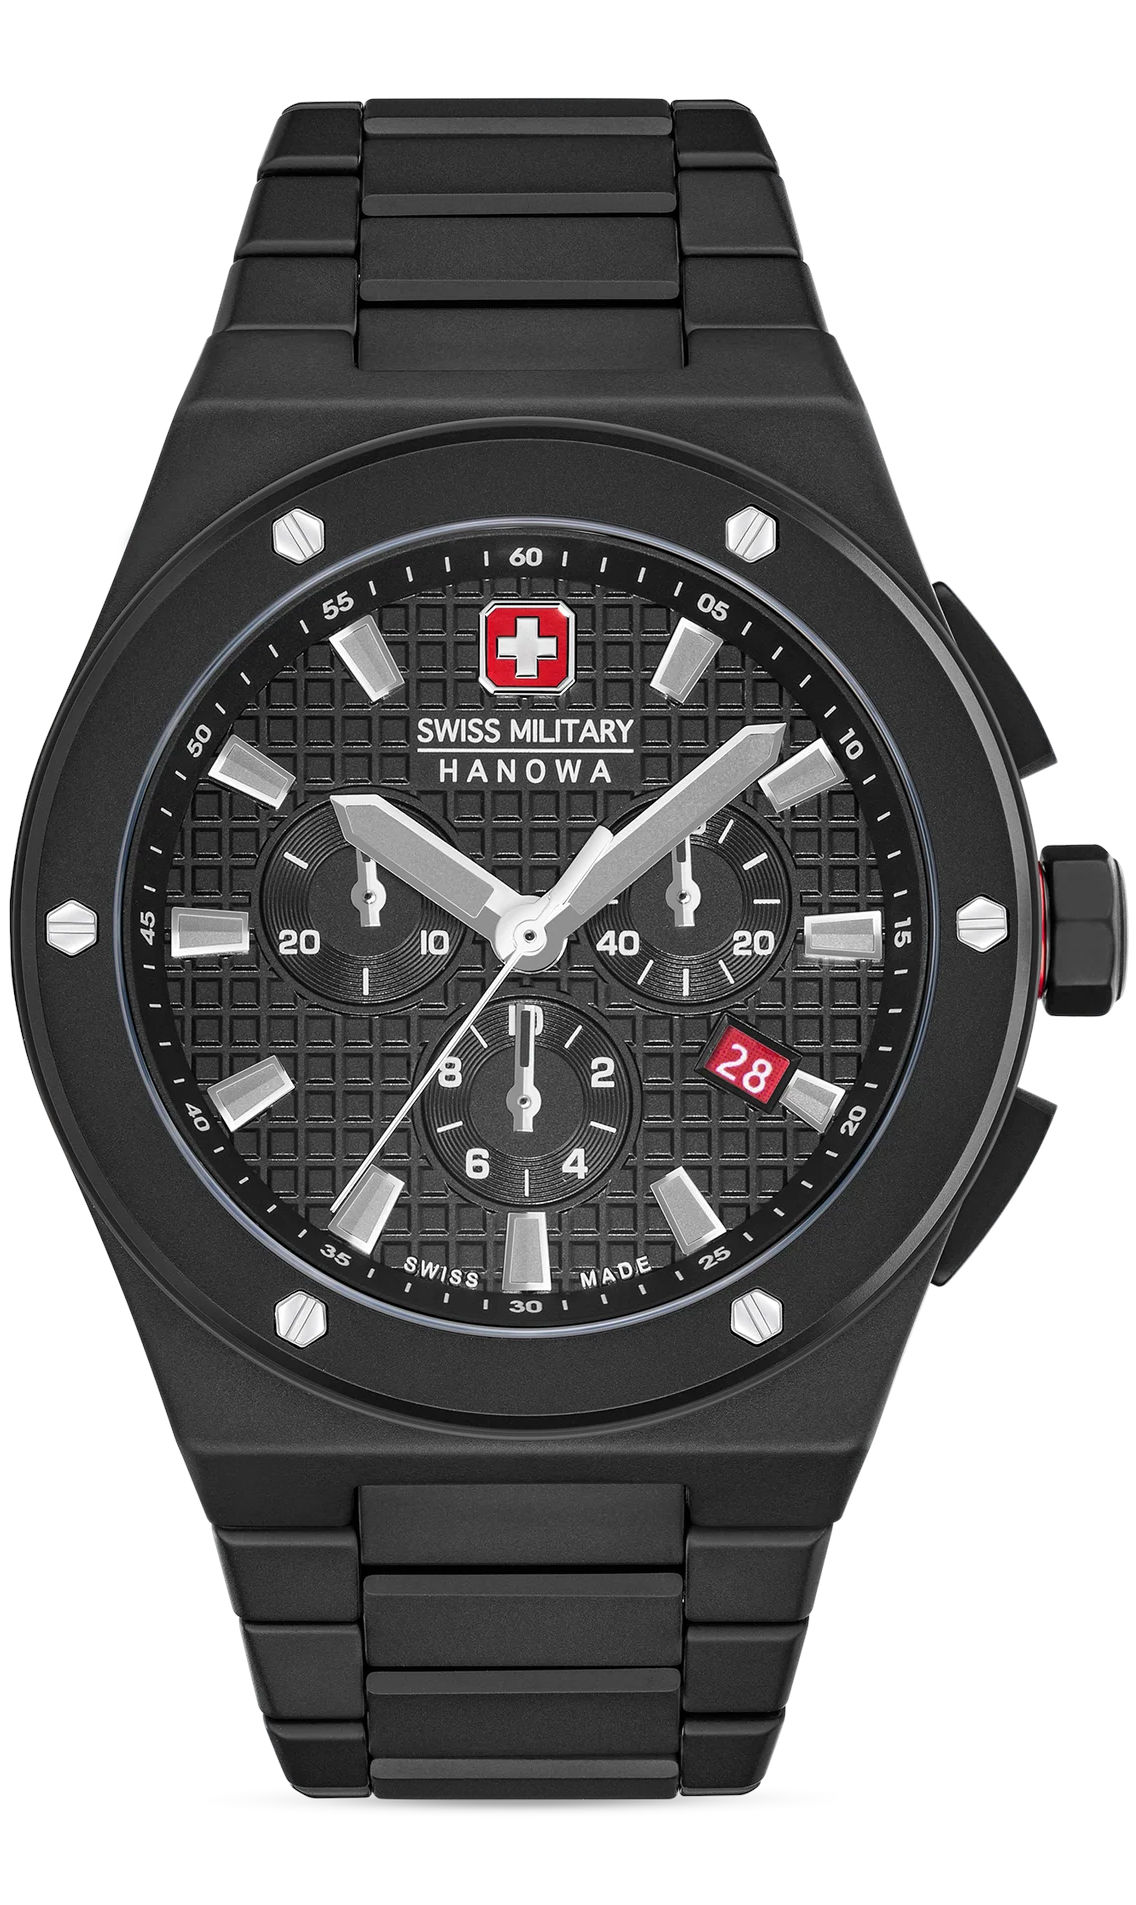  Swiss Military Hanowa SMWGI0002280